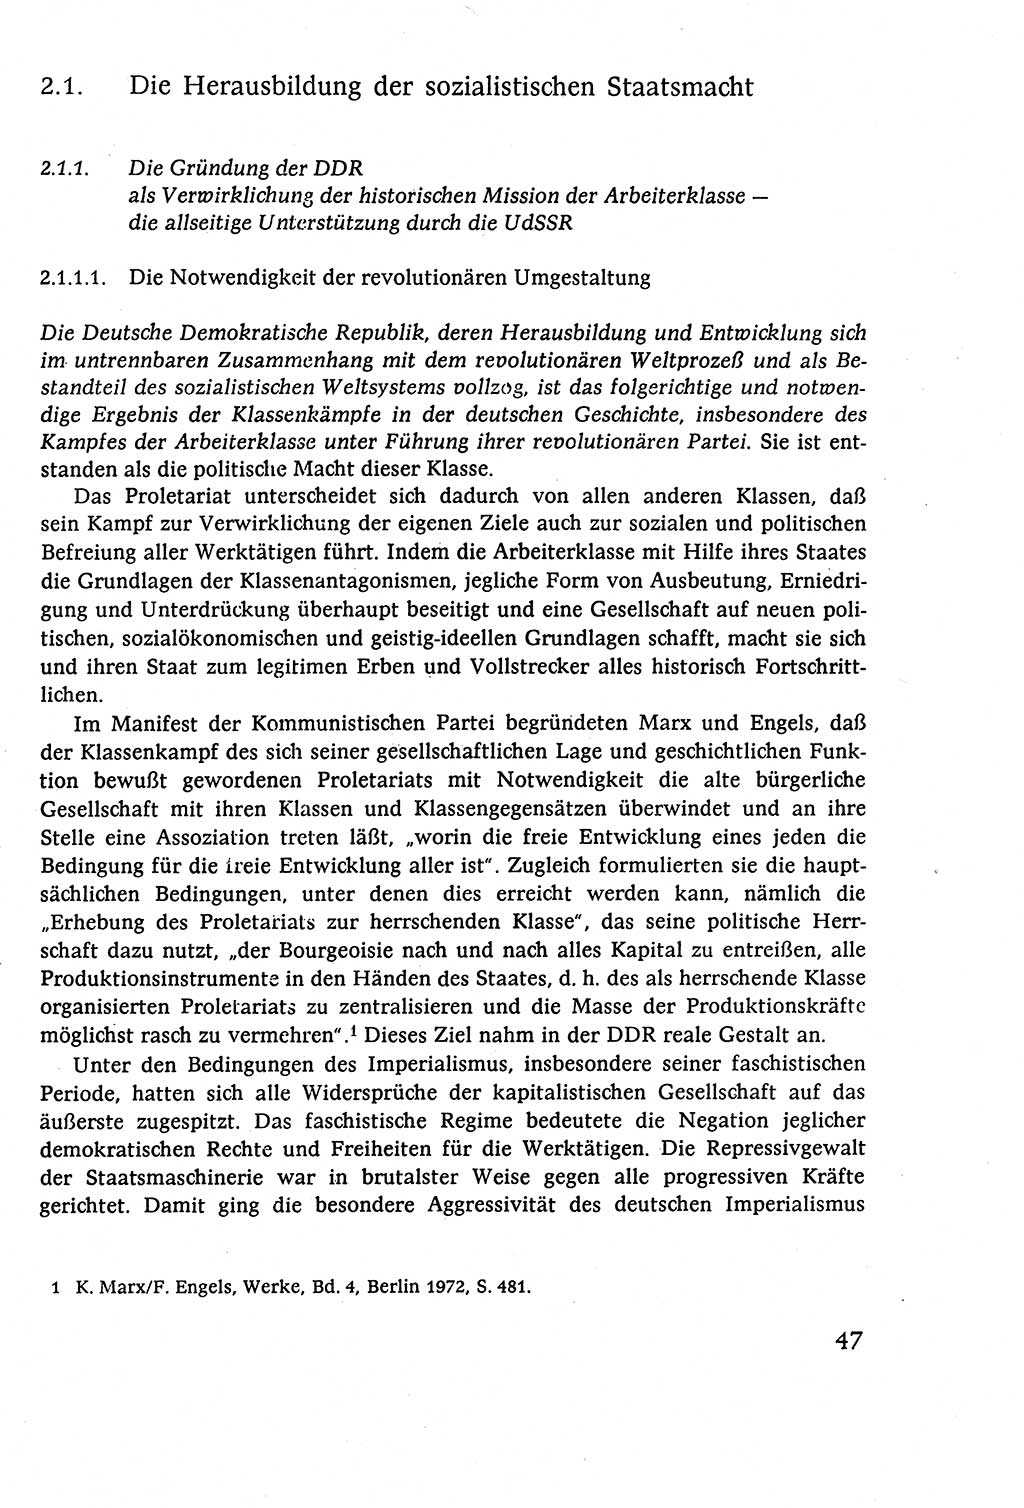 Staatsrecht der DDR (Deutsche Demokratische Republik), Lehrbuch 1977, Seite 47 (St.-R. DDR Lb. 1977, S. 47)